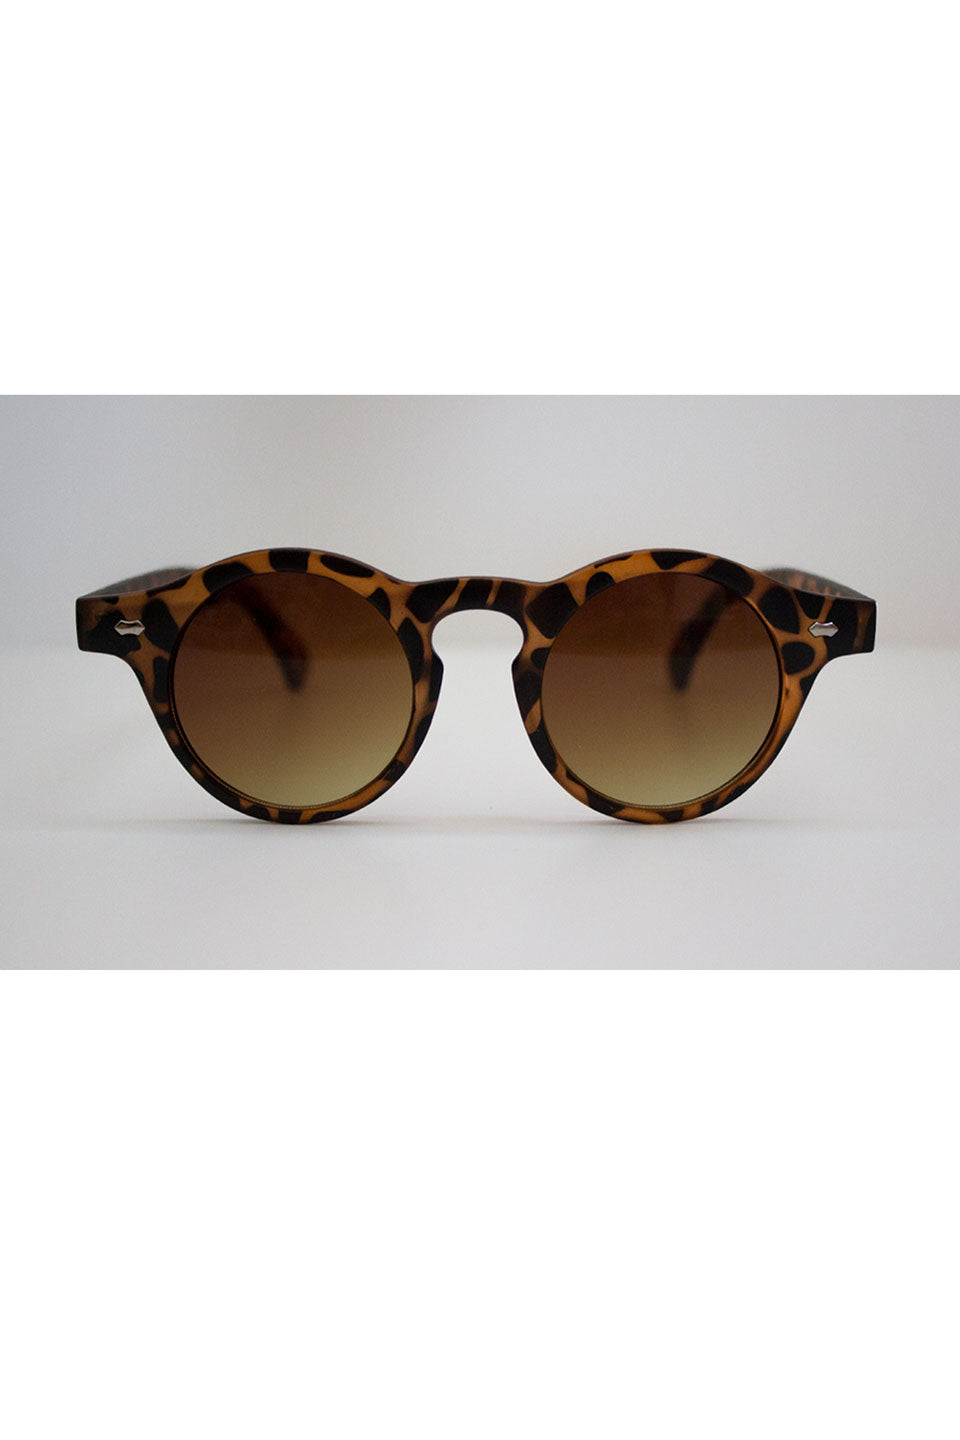 Joan 30s Sunglasses in Leopard